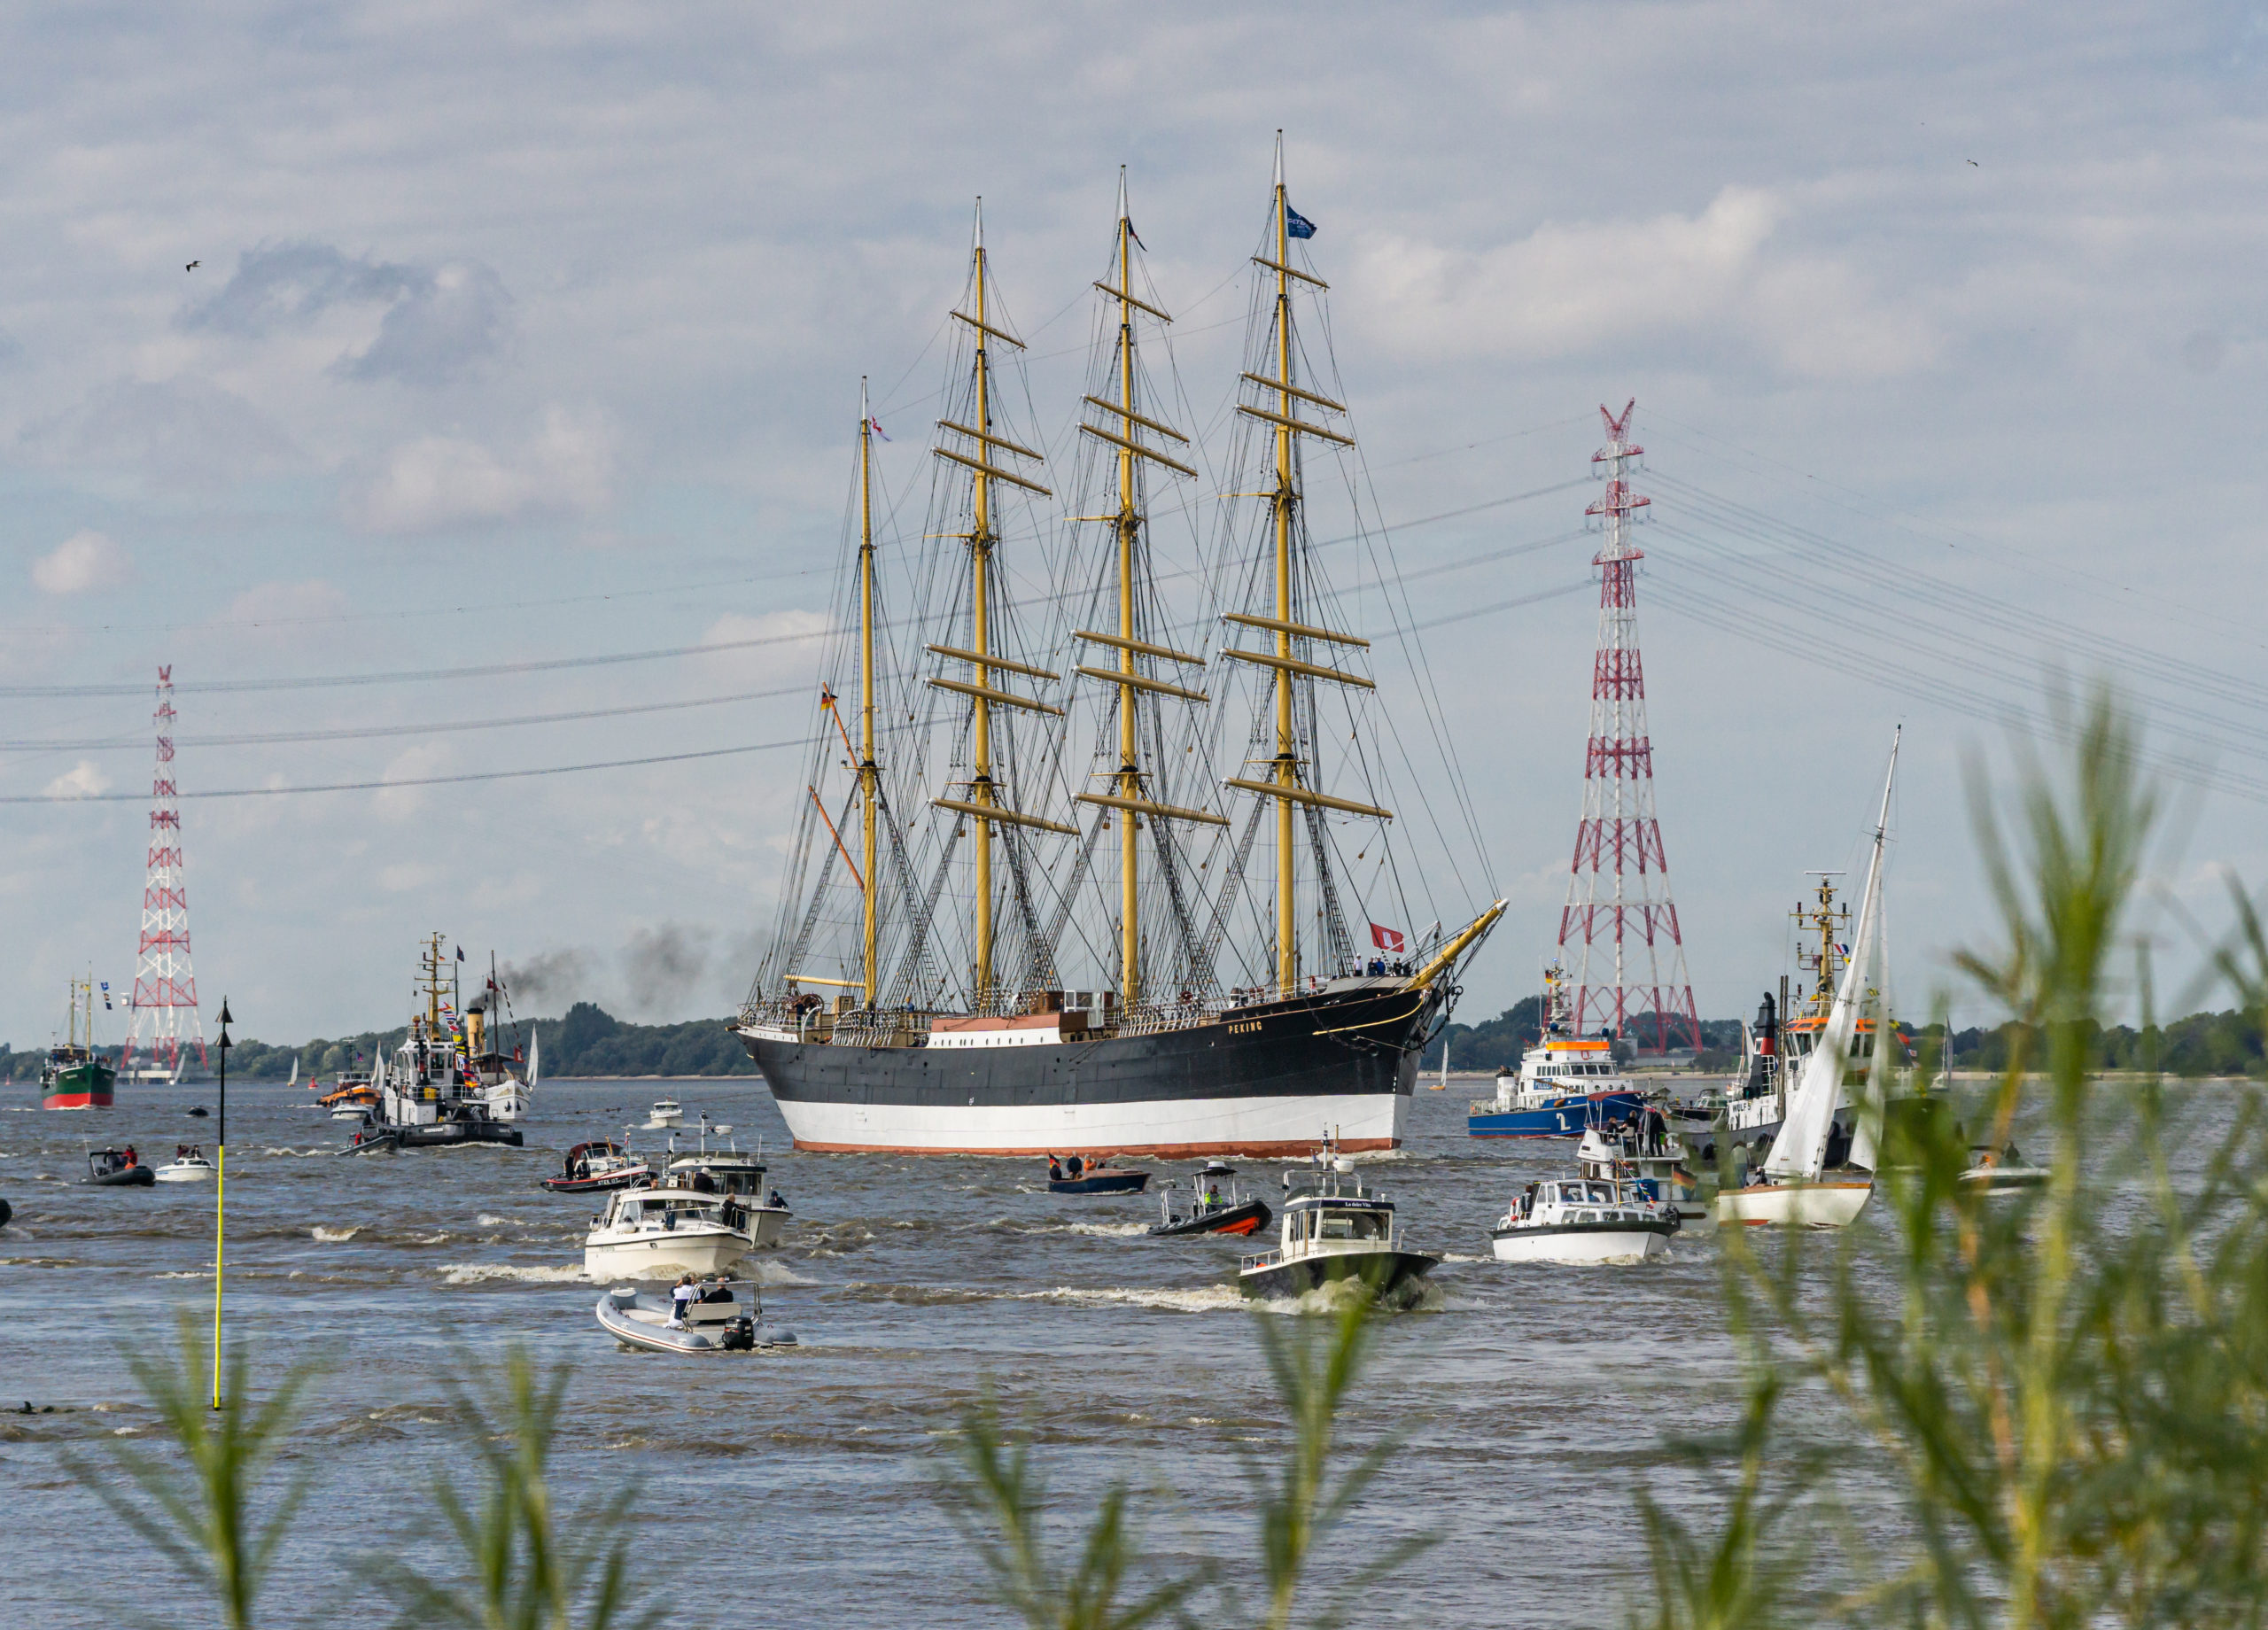 Segelfrachtschiff Peking auf der Elbe nach der Restaurierung